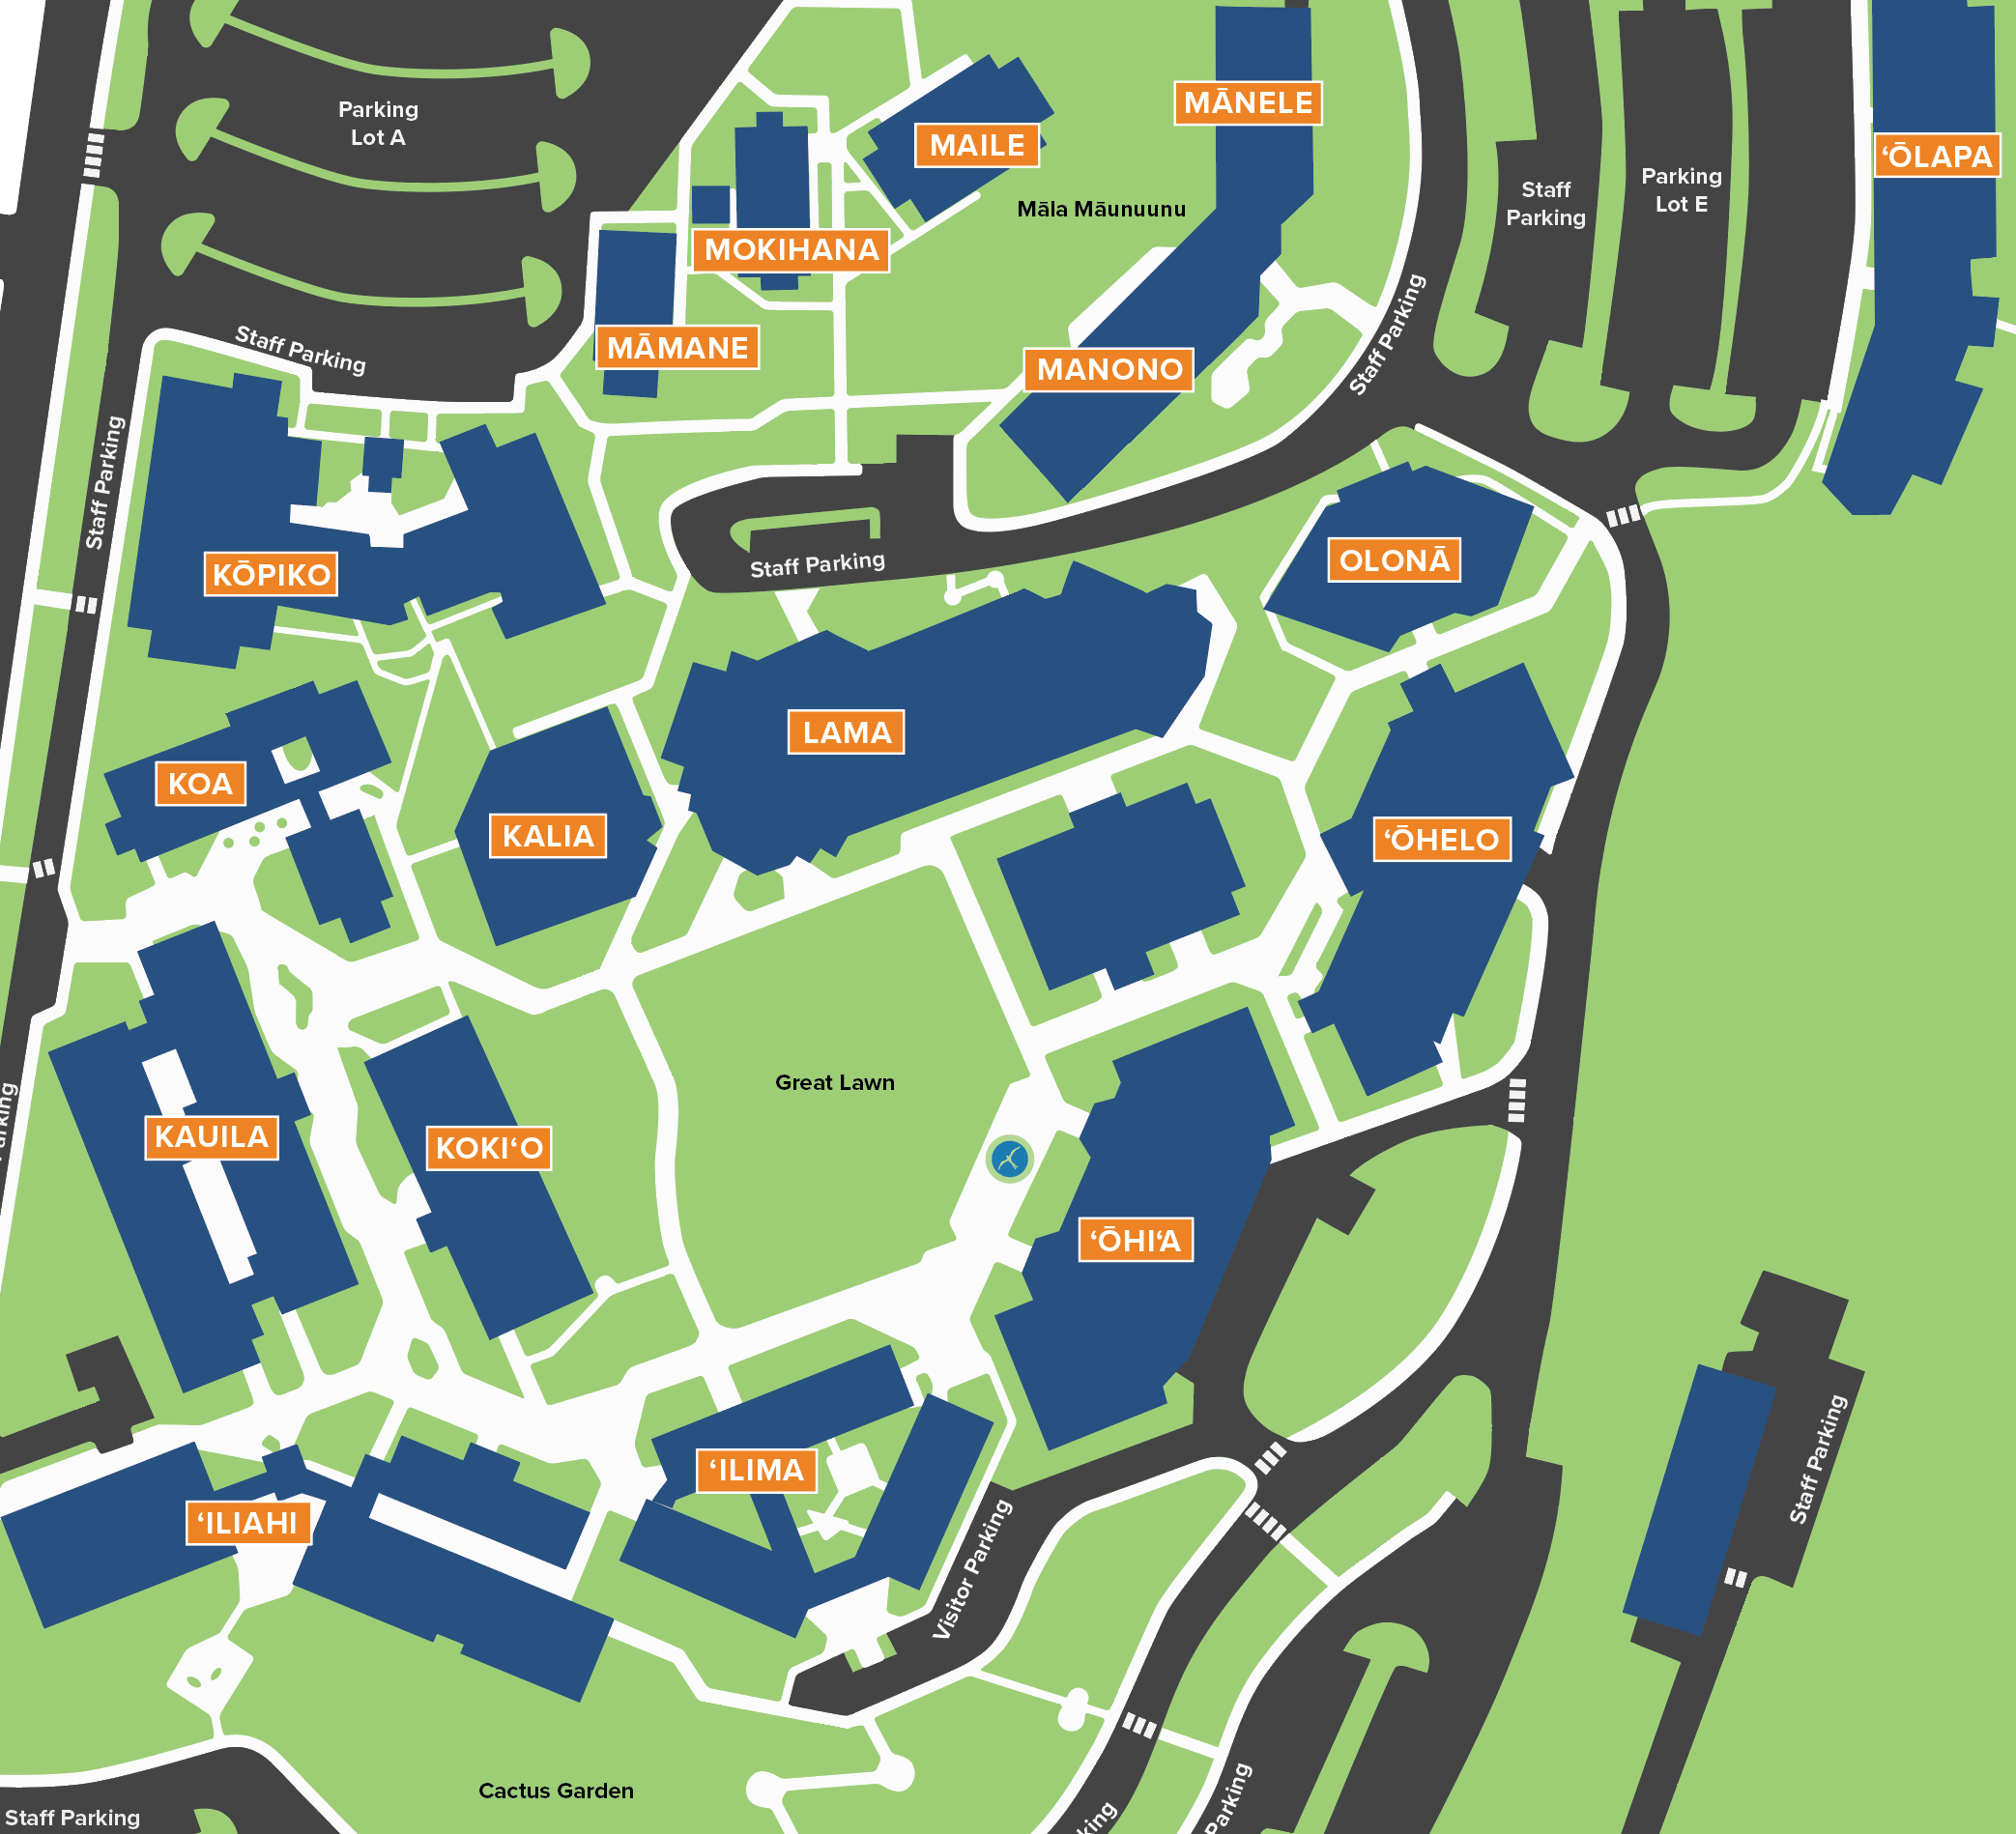 Campus Tour Map